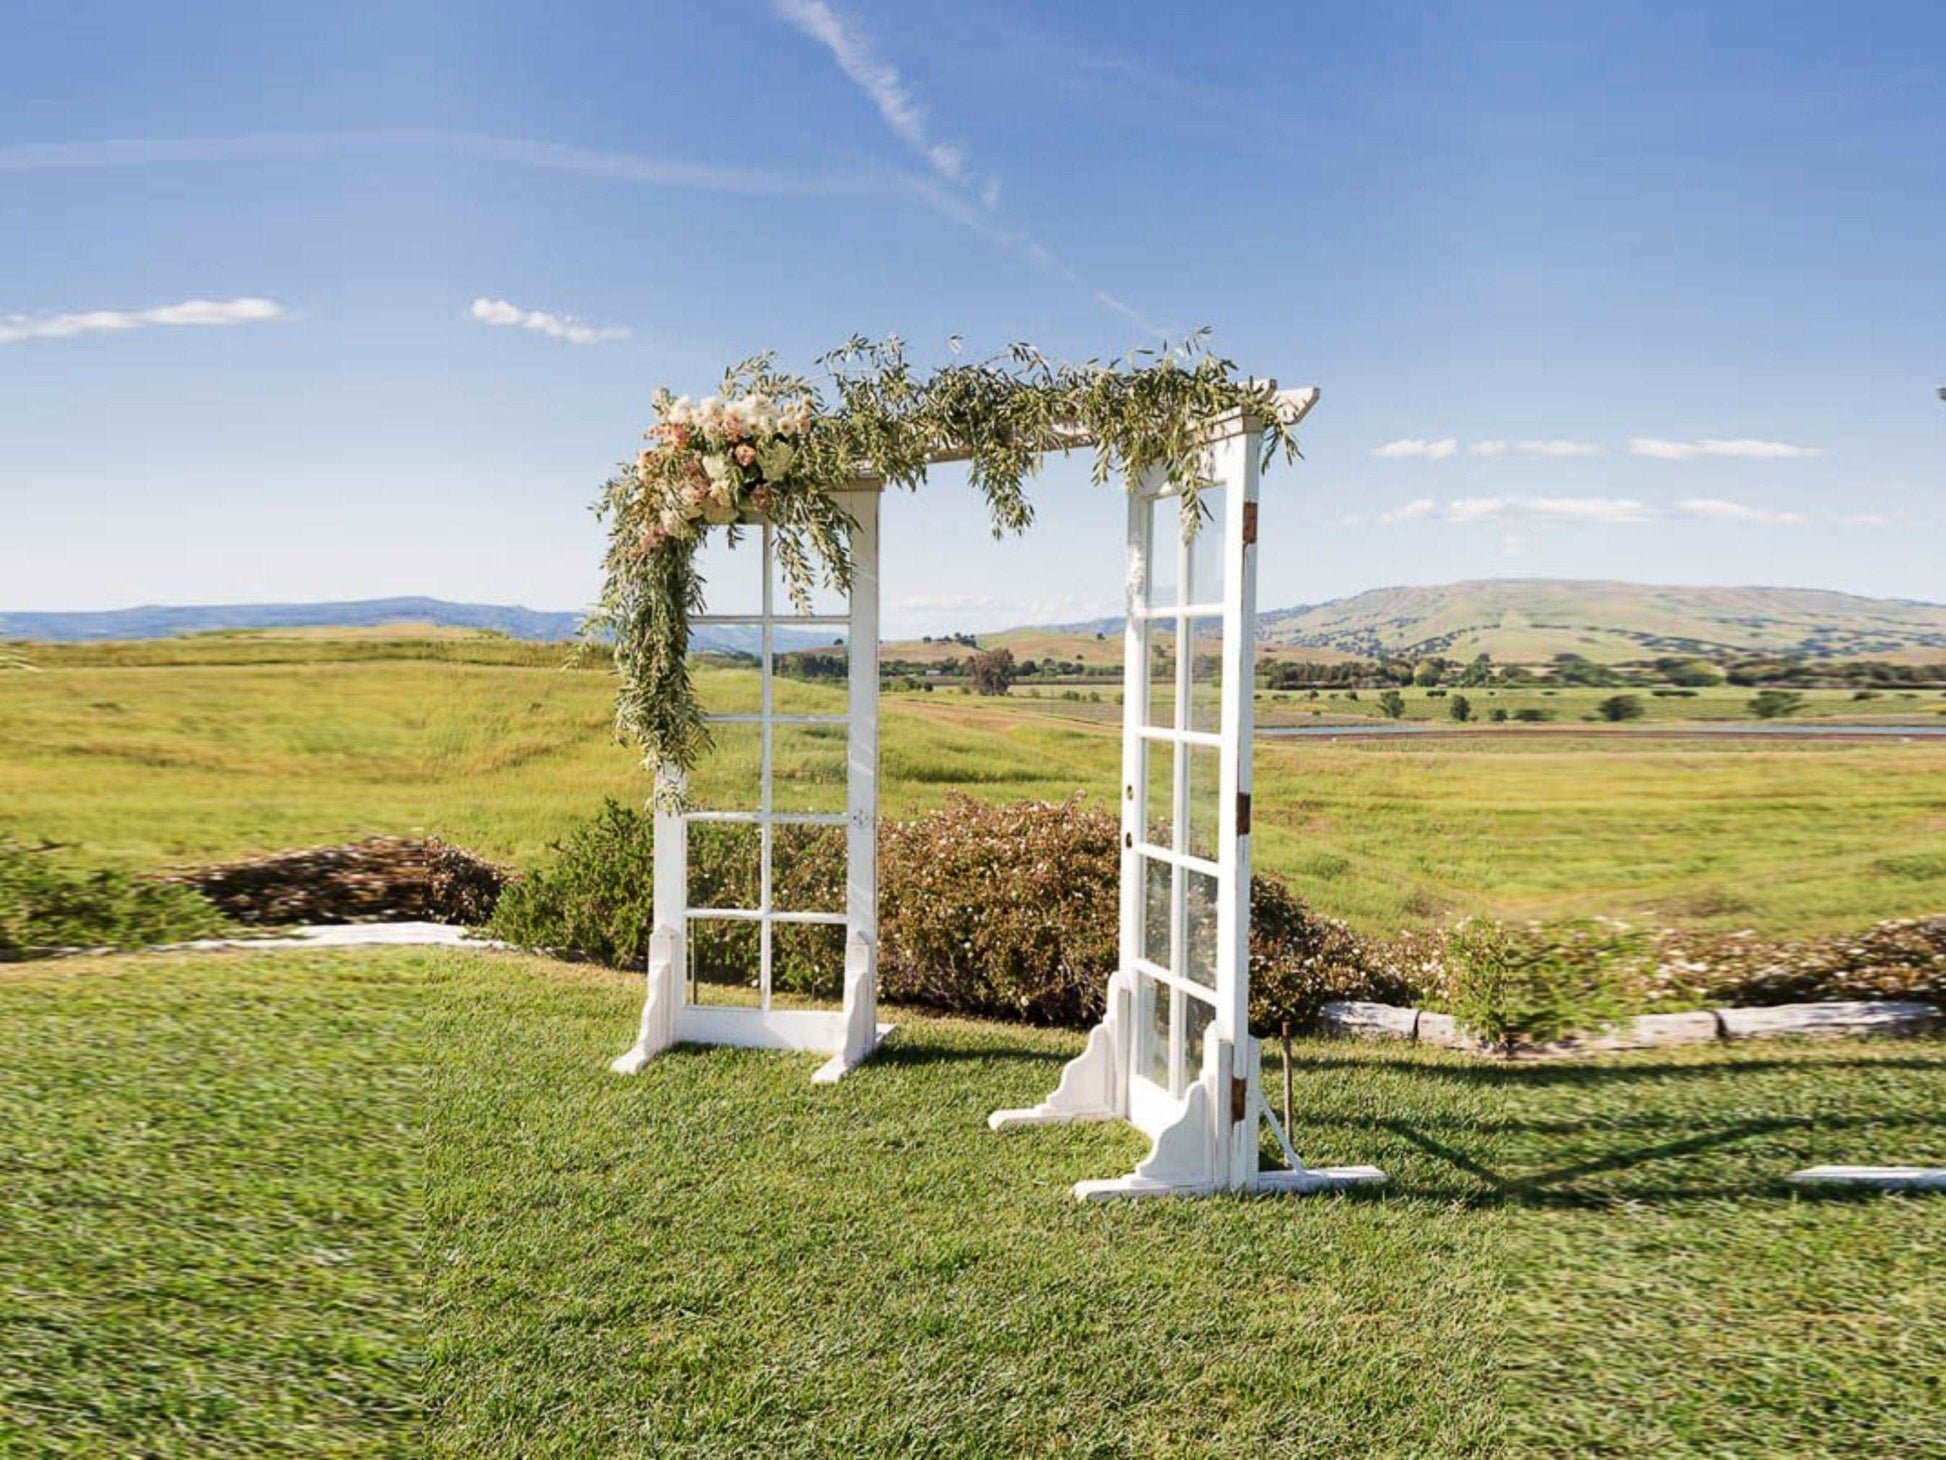 Double Door Wedding Arbor Plans - DIY plans for bohem wedding trellis - Build plans for wedding arch